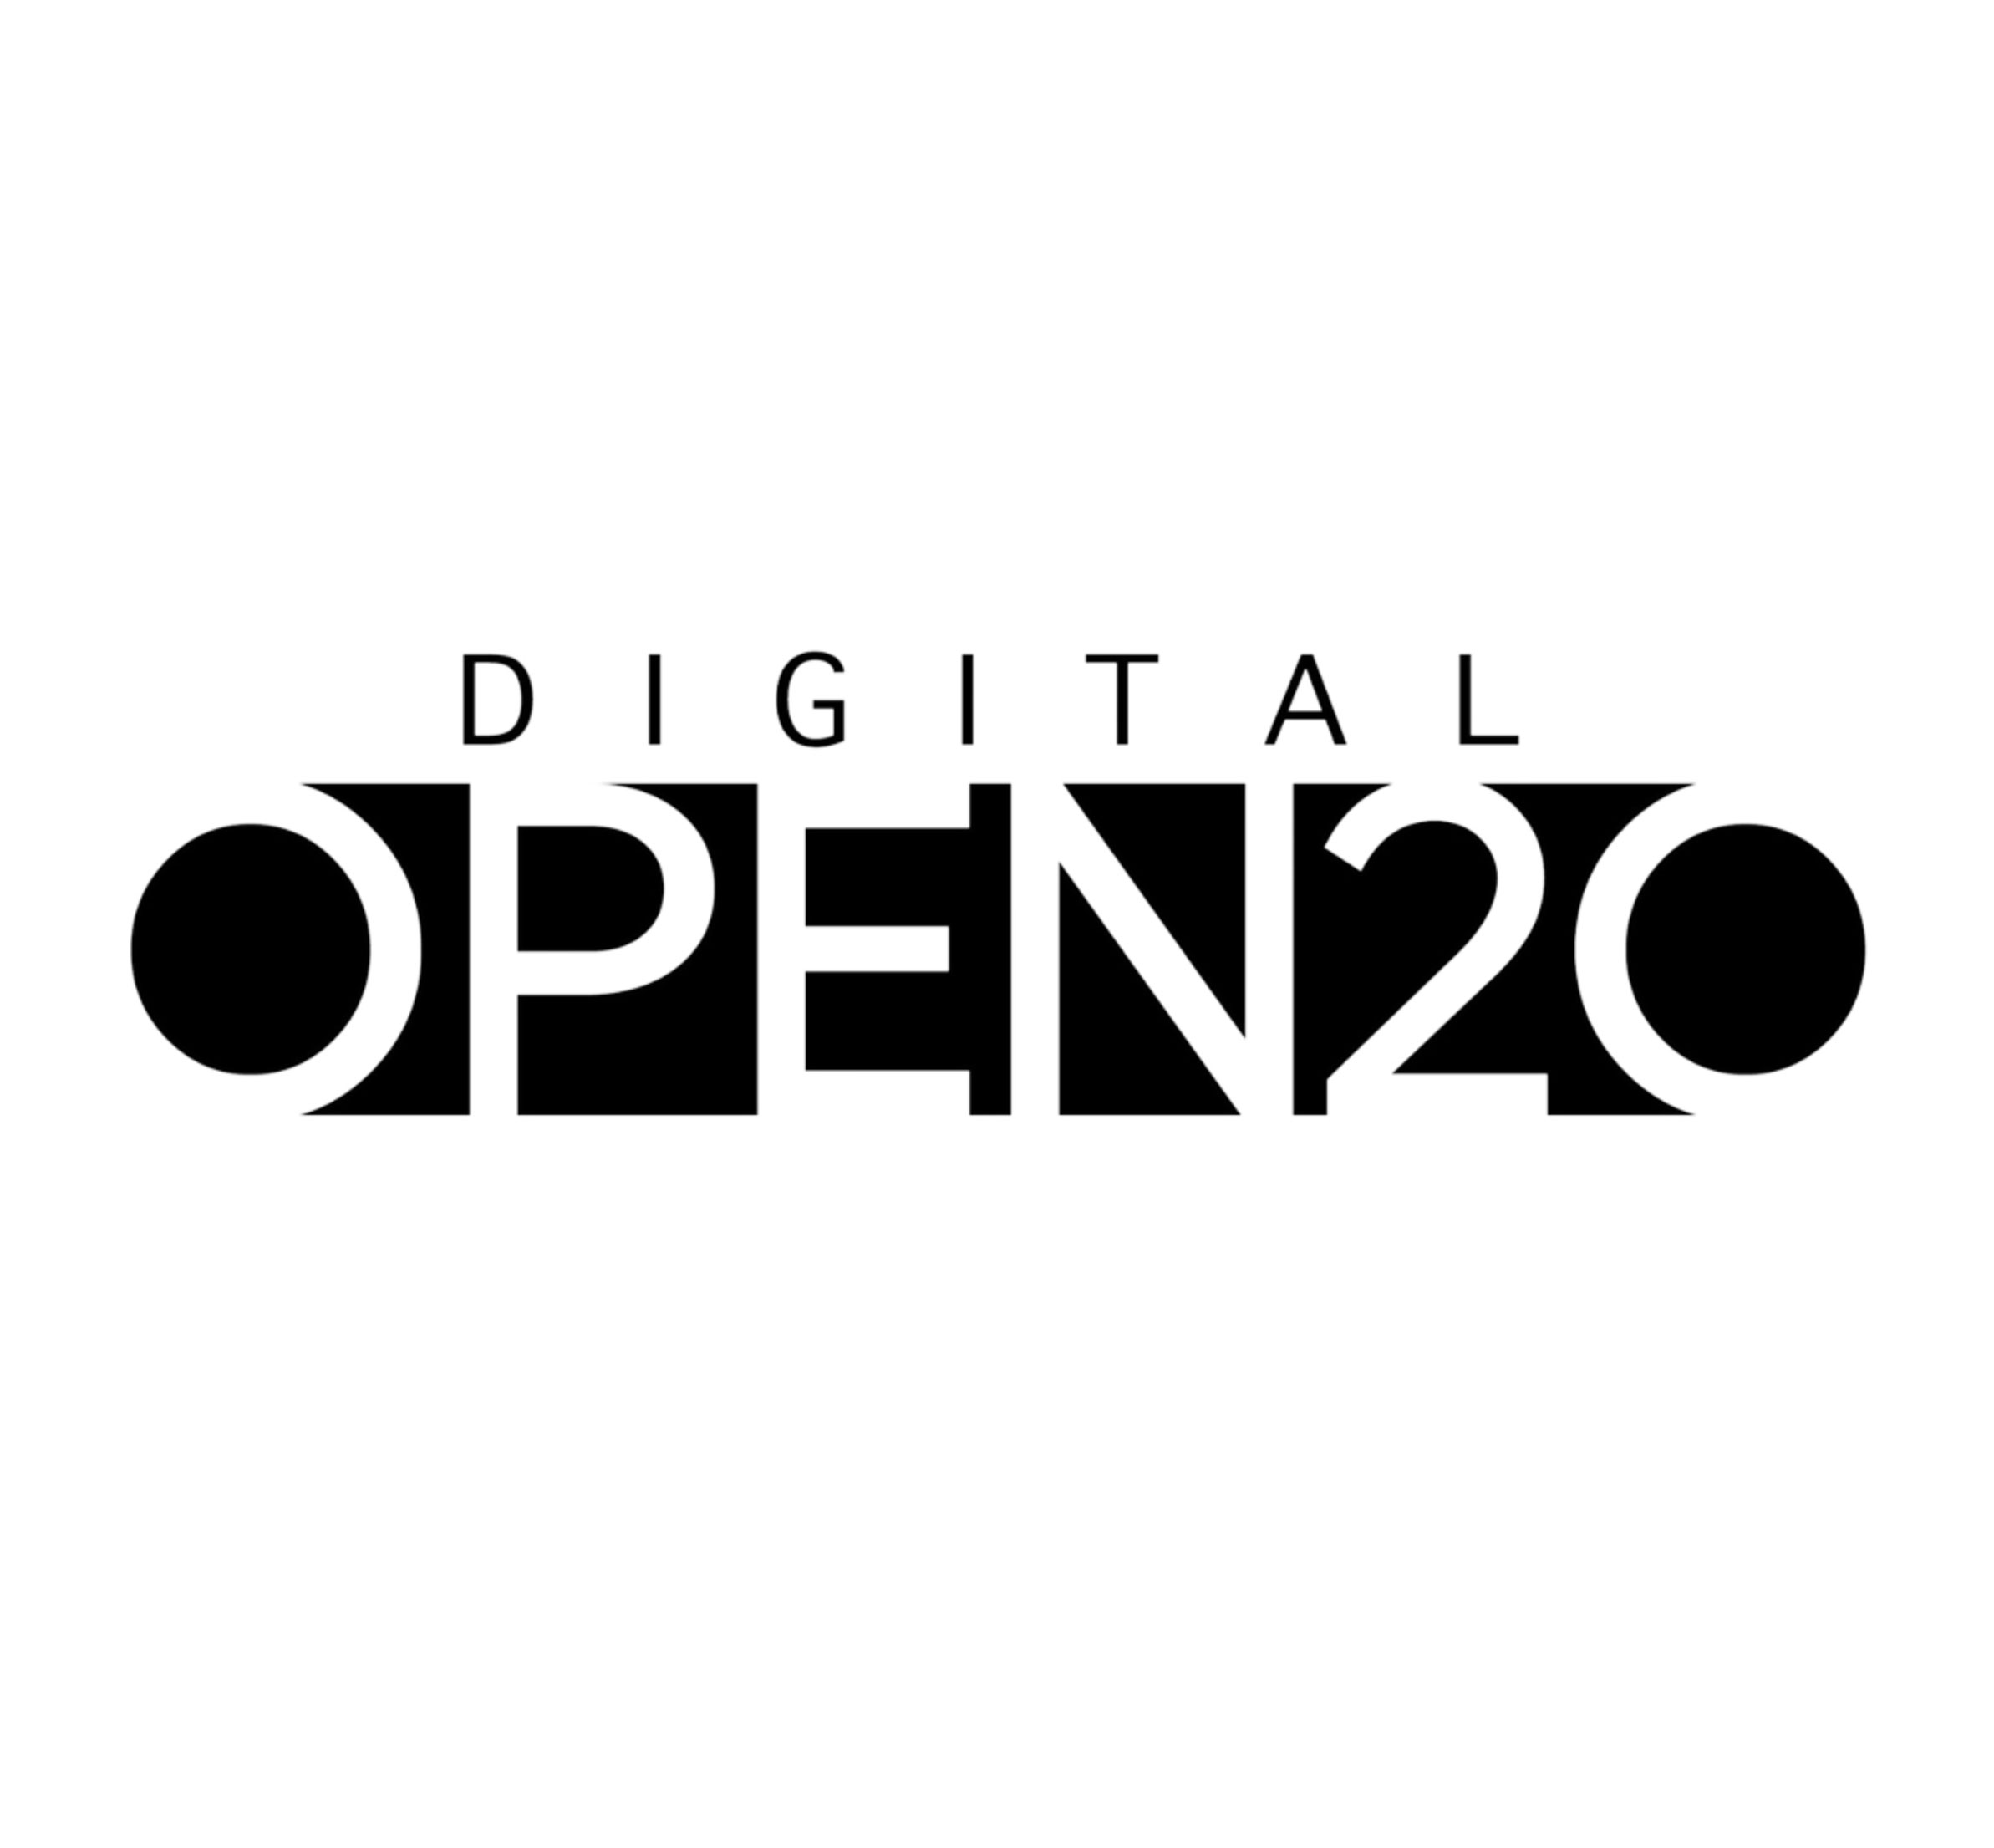 Digital Open 20 Logo